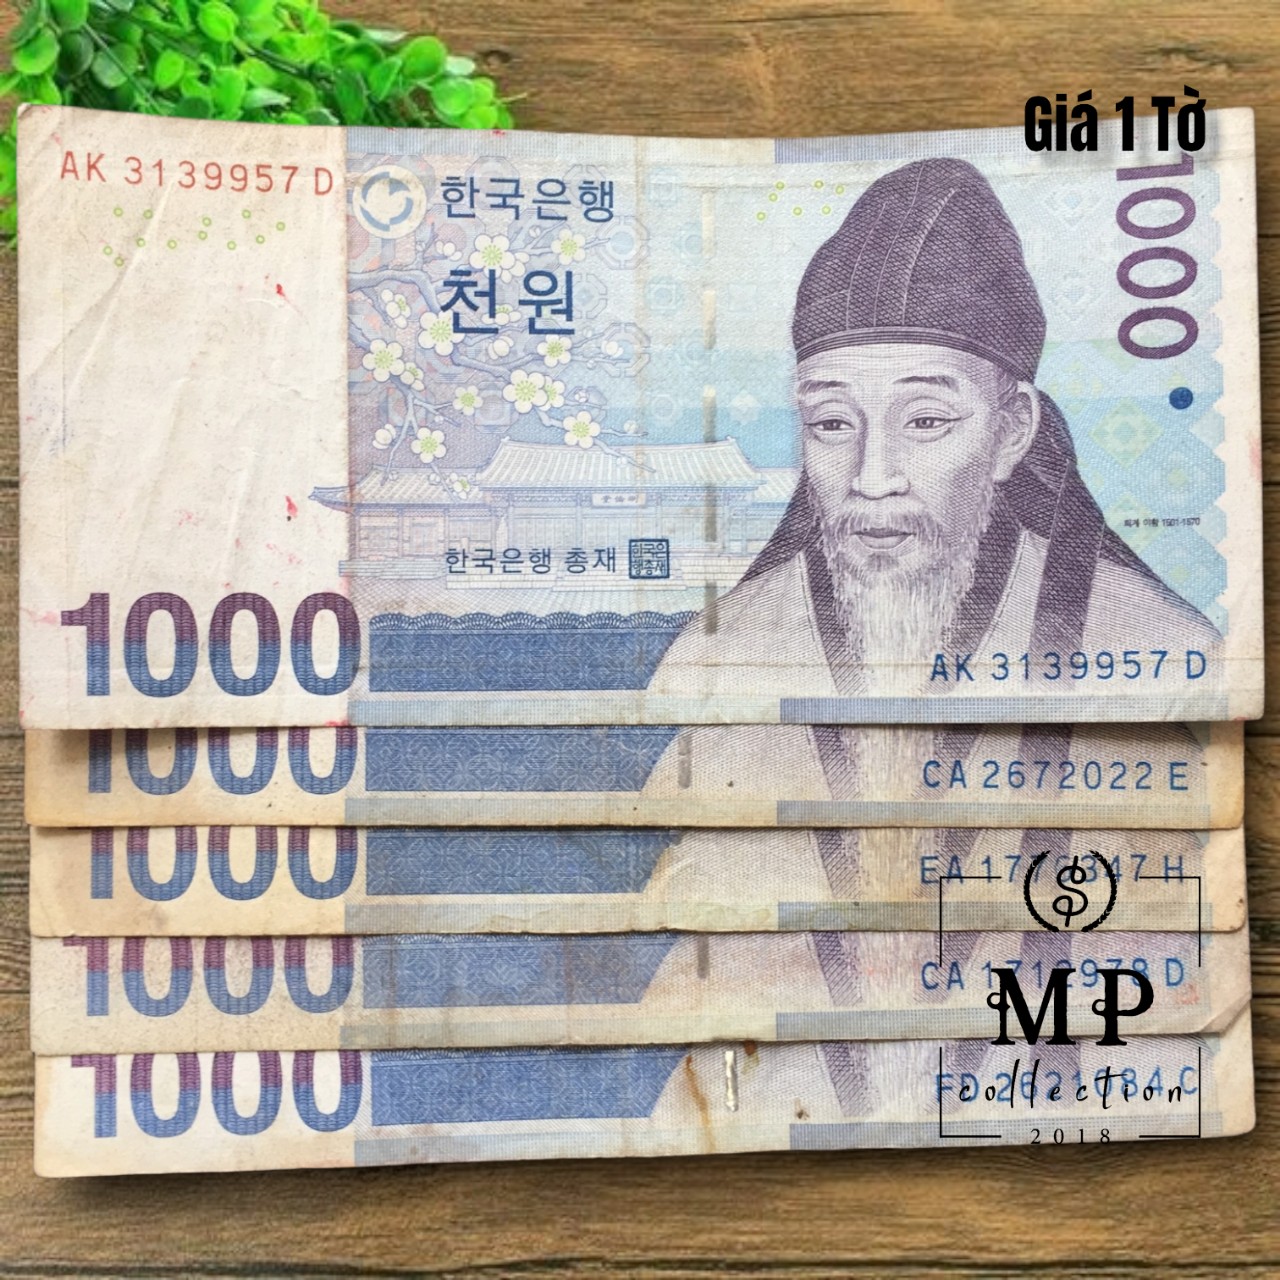 Tờ tiền Hàn Quốc mệnh giá 1000 won Cũ - Tặng túi nilon bảo quản Hàng chuẩn thật